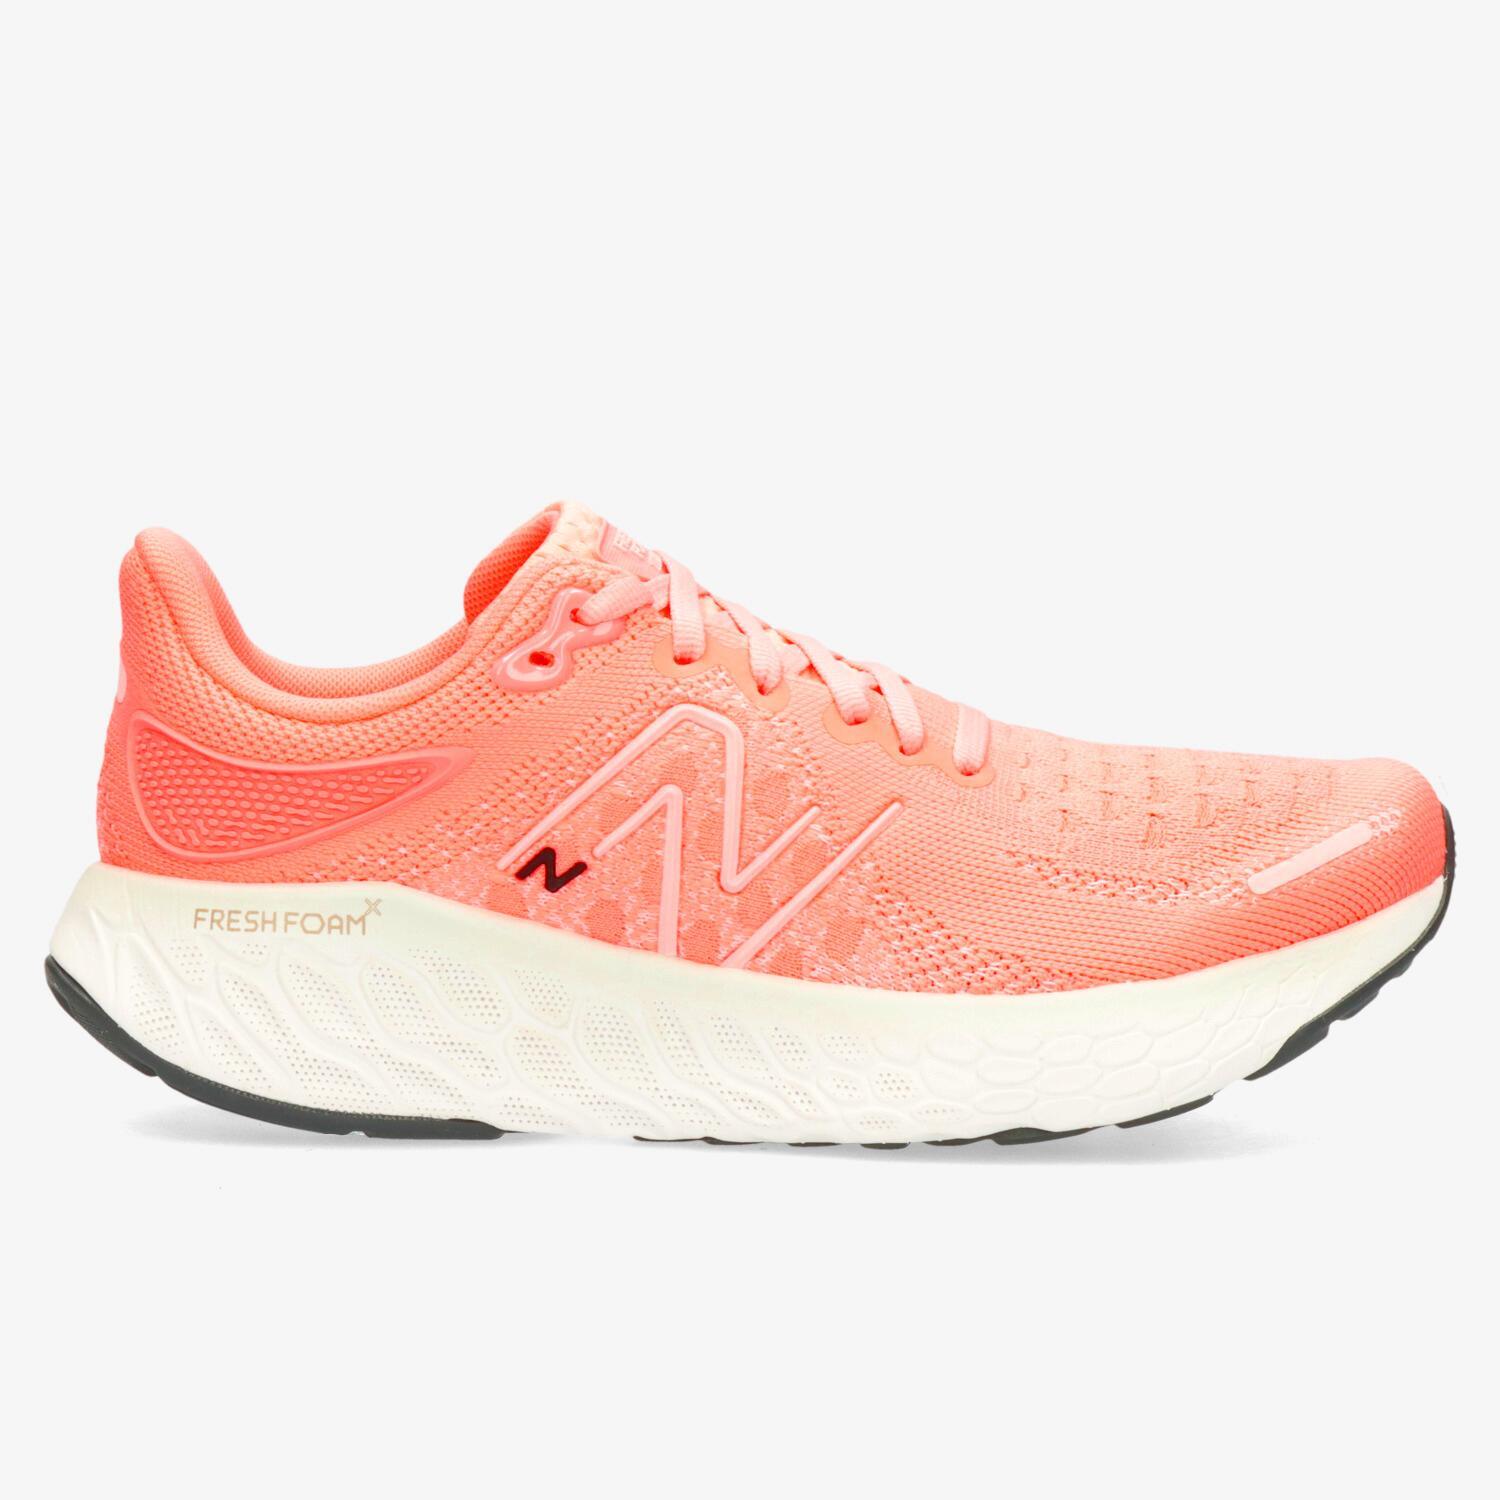 New Balance 1080 v12 - Coral - Zapatillas Running Mujer